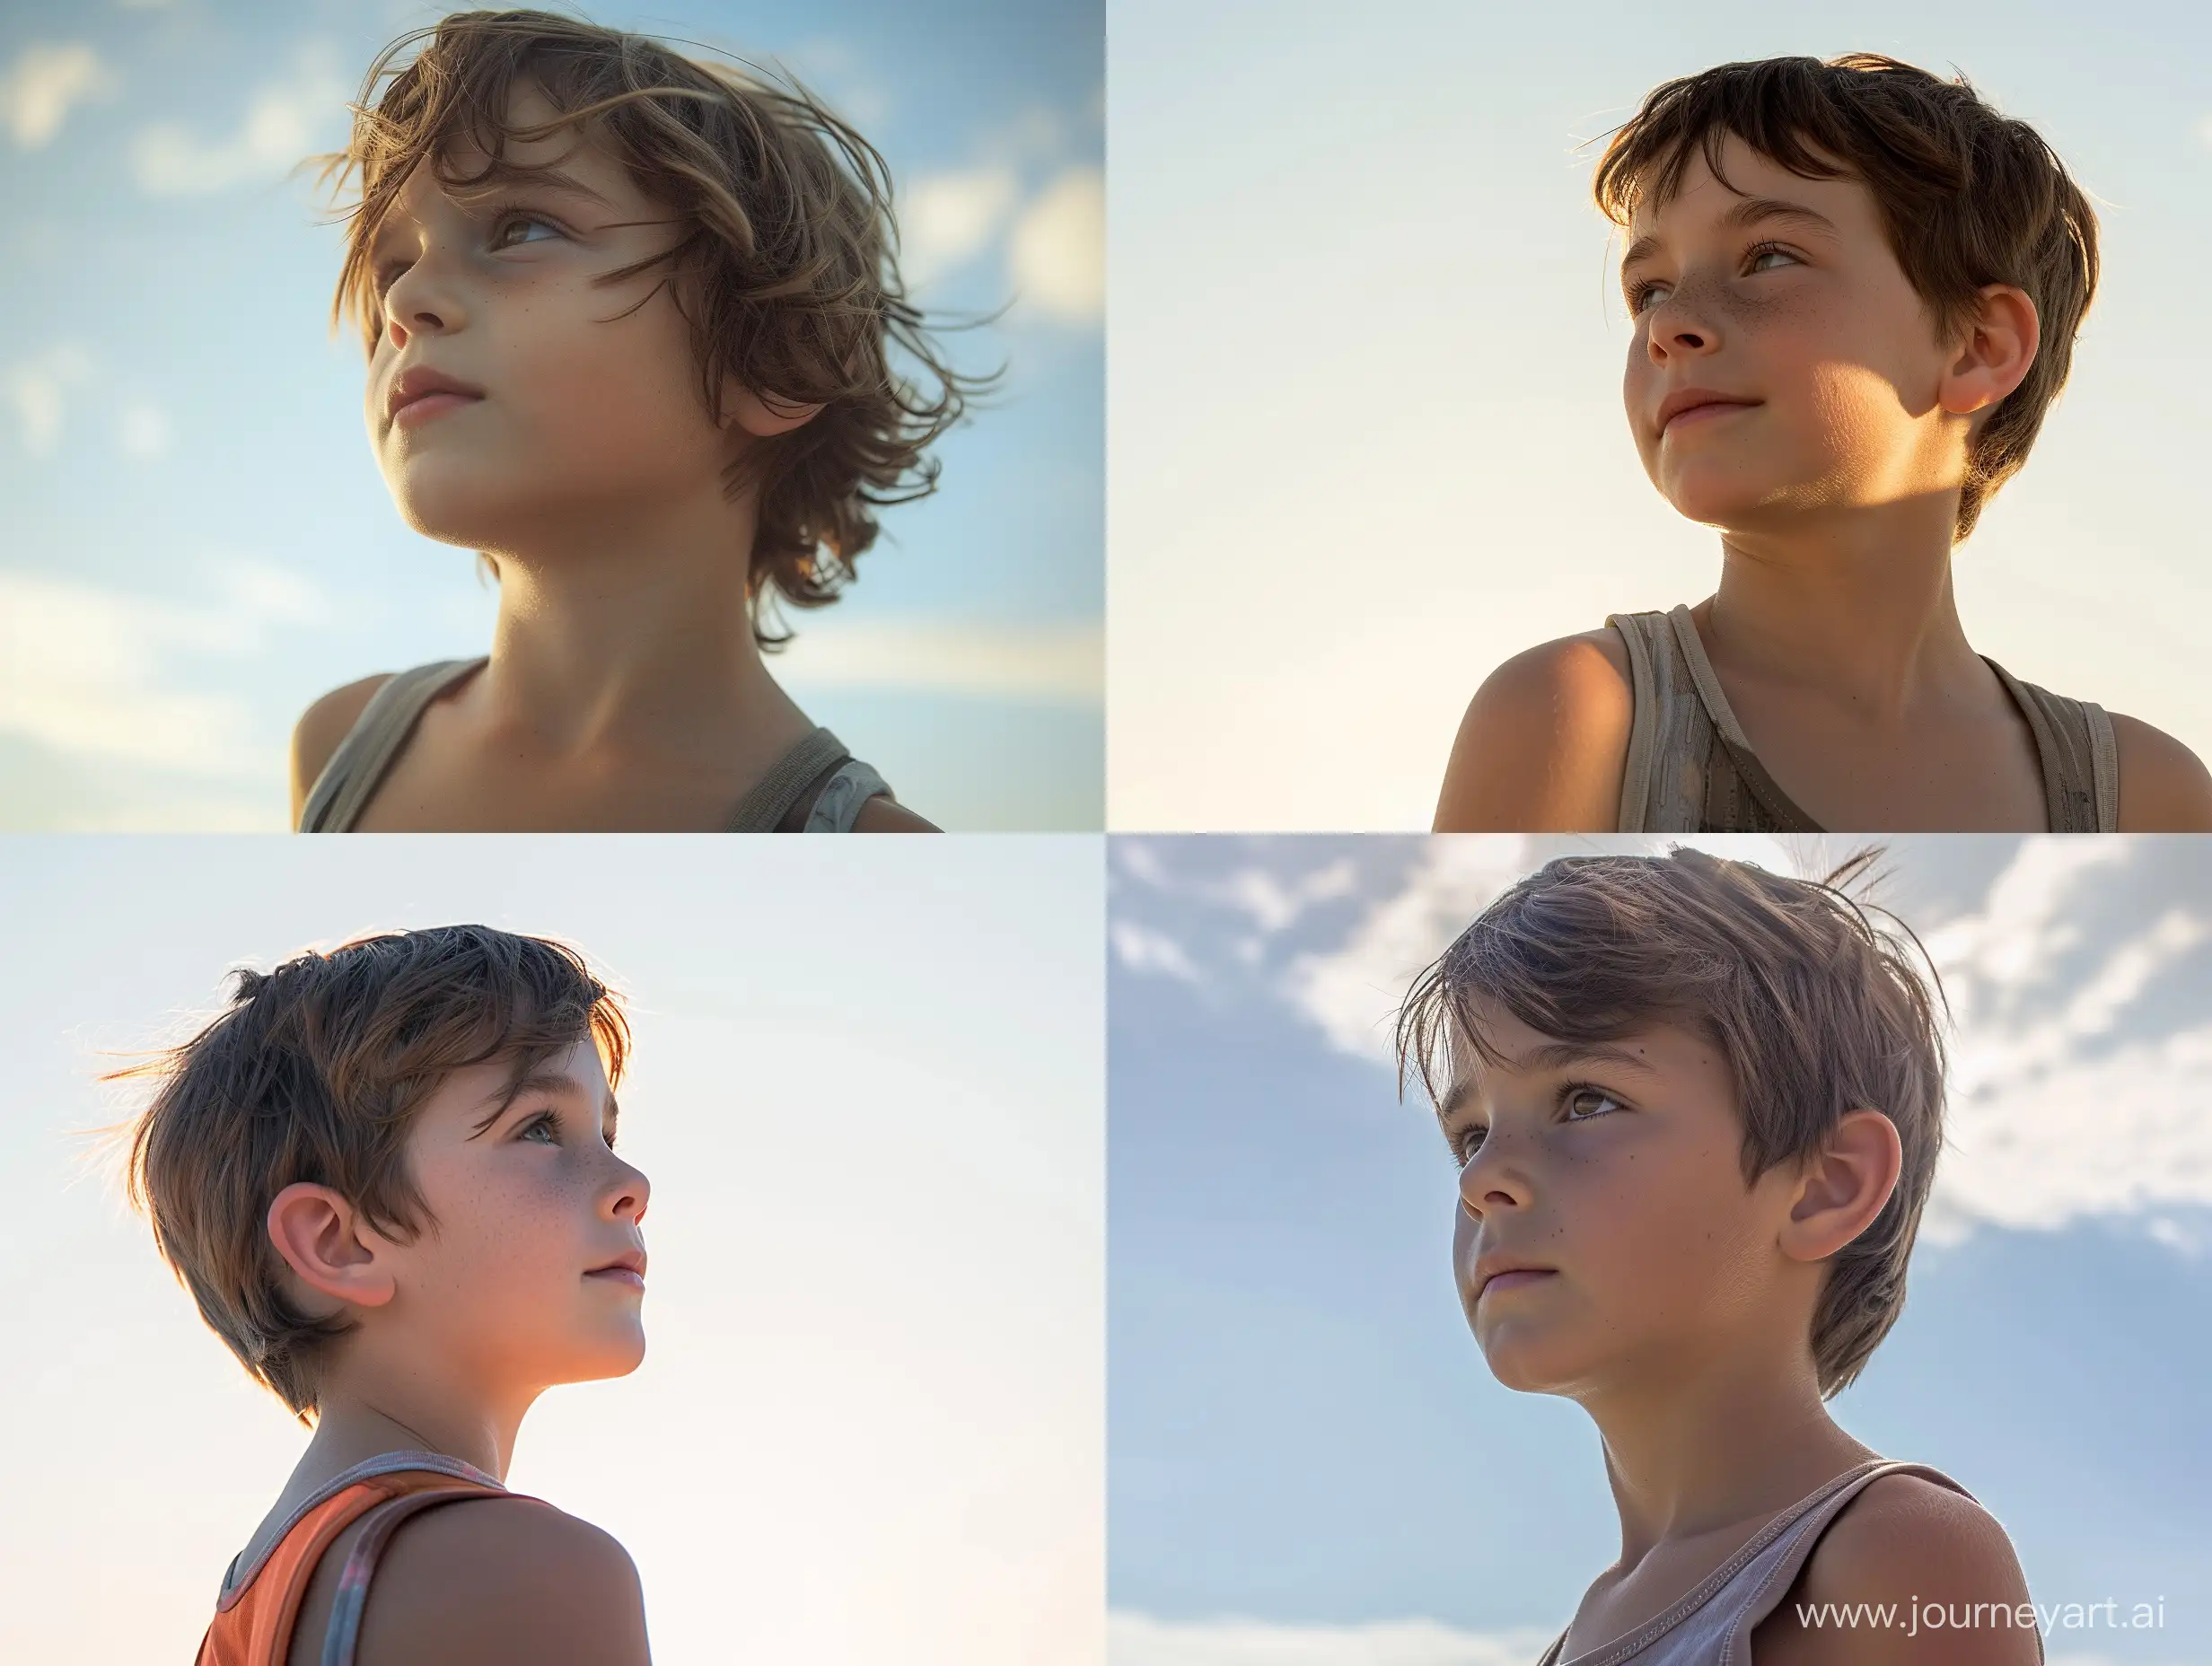  фото мальчика 11 лет, портрет по грудь с боку, анфас две четверти,одет в майку,смотрит в даль, на фоне неба, 